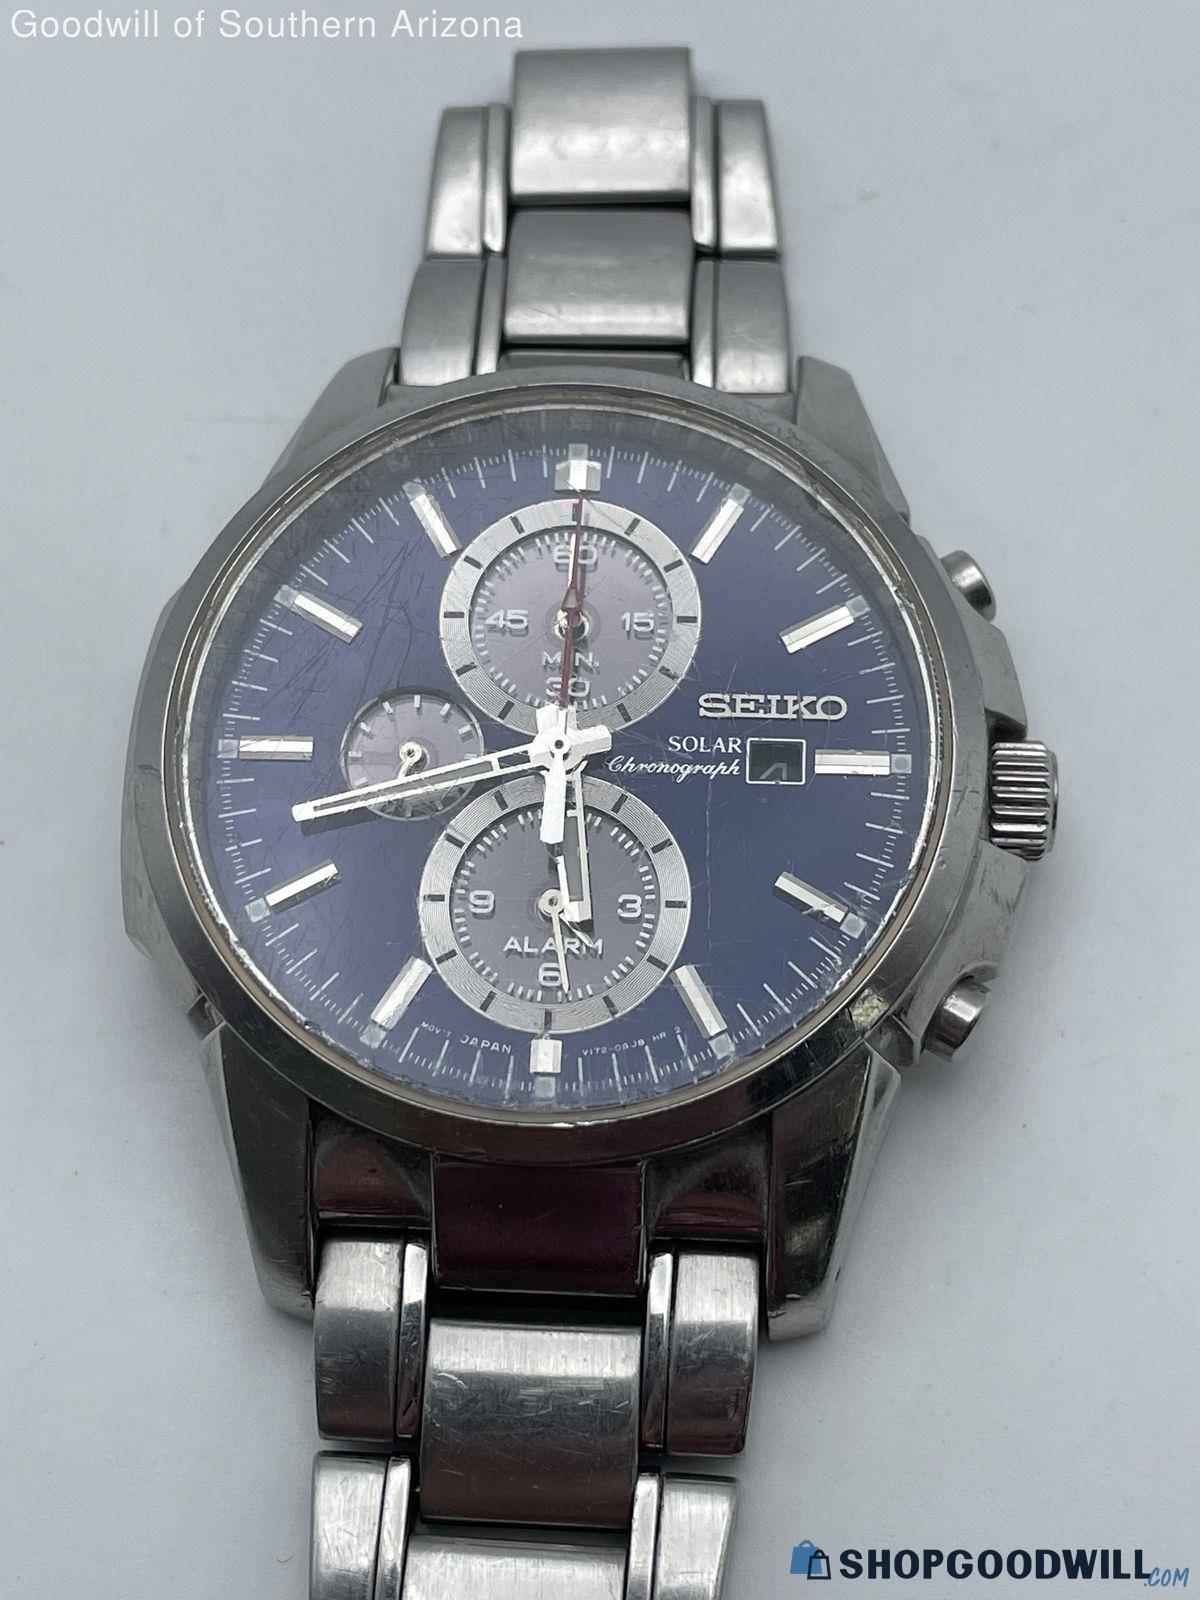 Seiko Solar Chronograph Watch V172-0AF0 *Works* - shopgoodwill.com